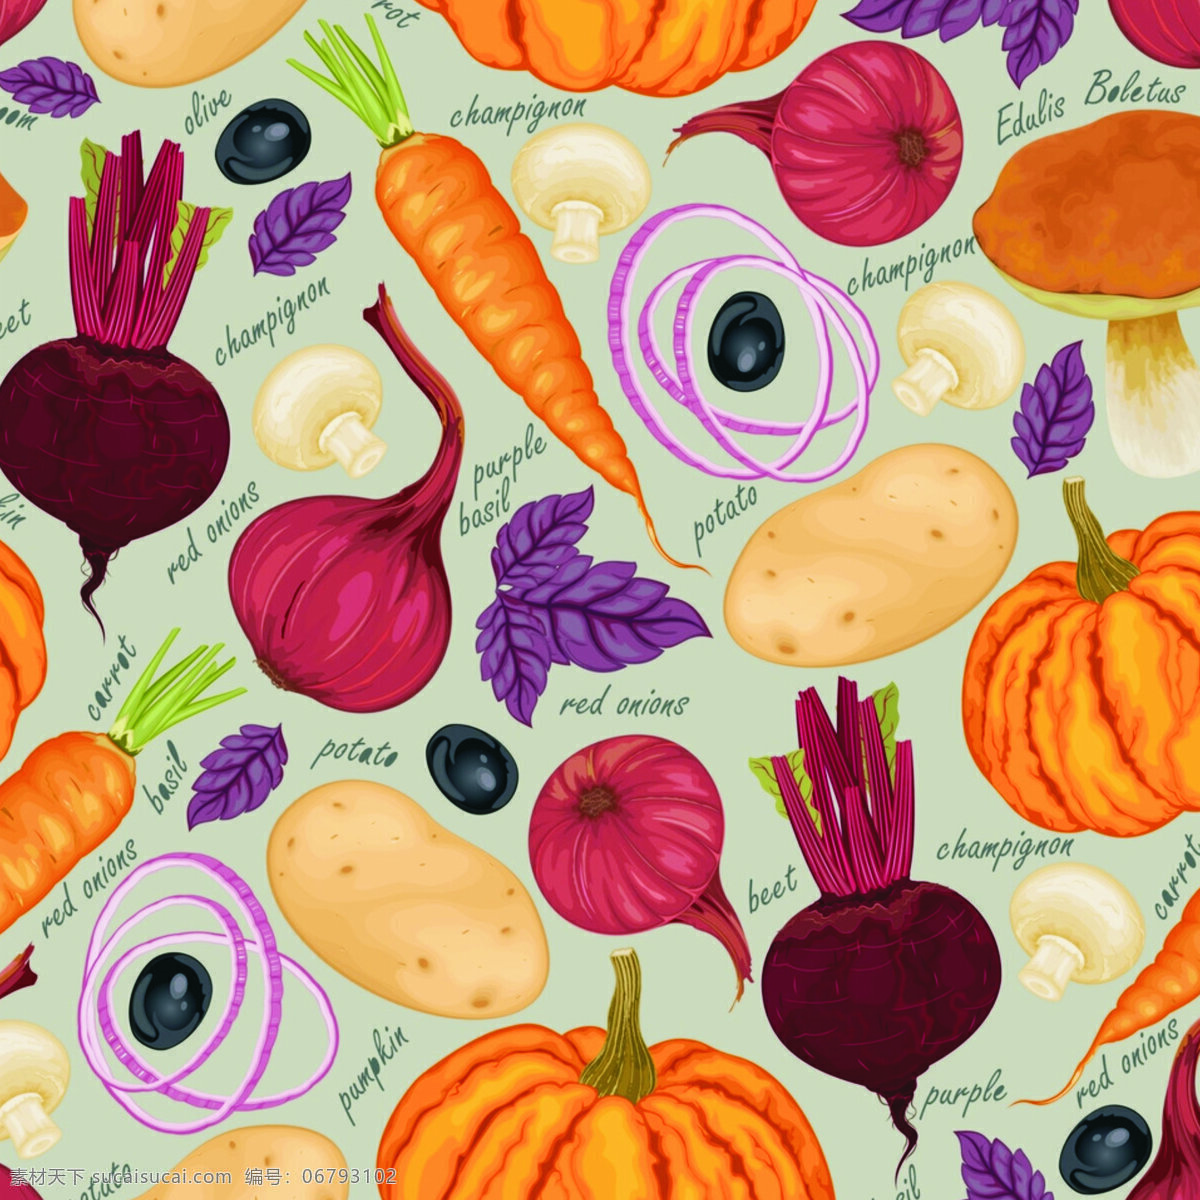 蔬菜 背景 墙 图案 蔬菜背景墙图 蔬菜图案 欧美蔬菜 蔬菜手绘 精美蔬菜 底纹边框 背景底纹